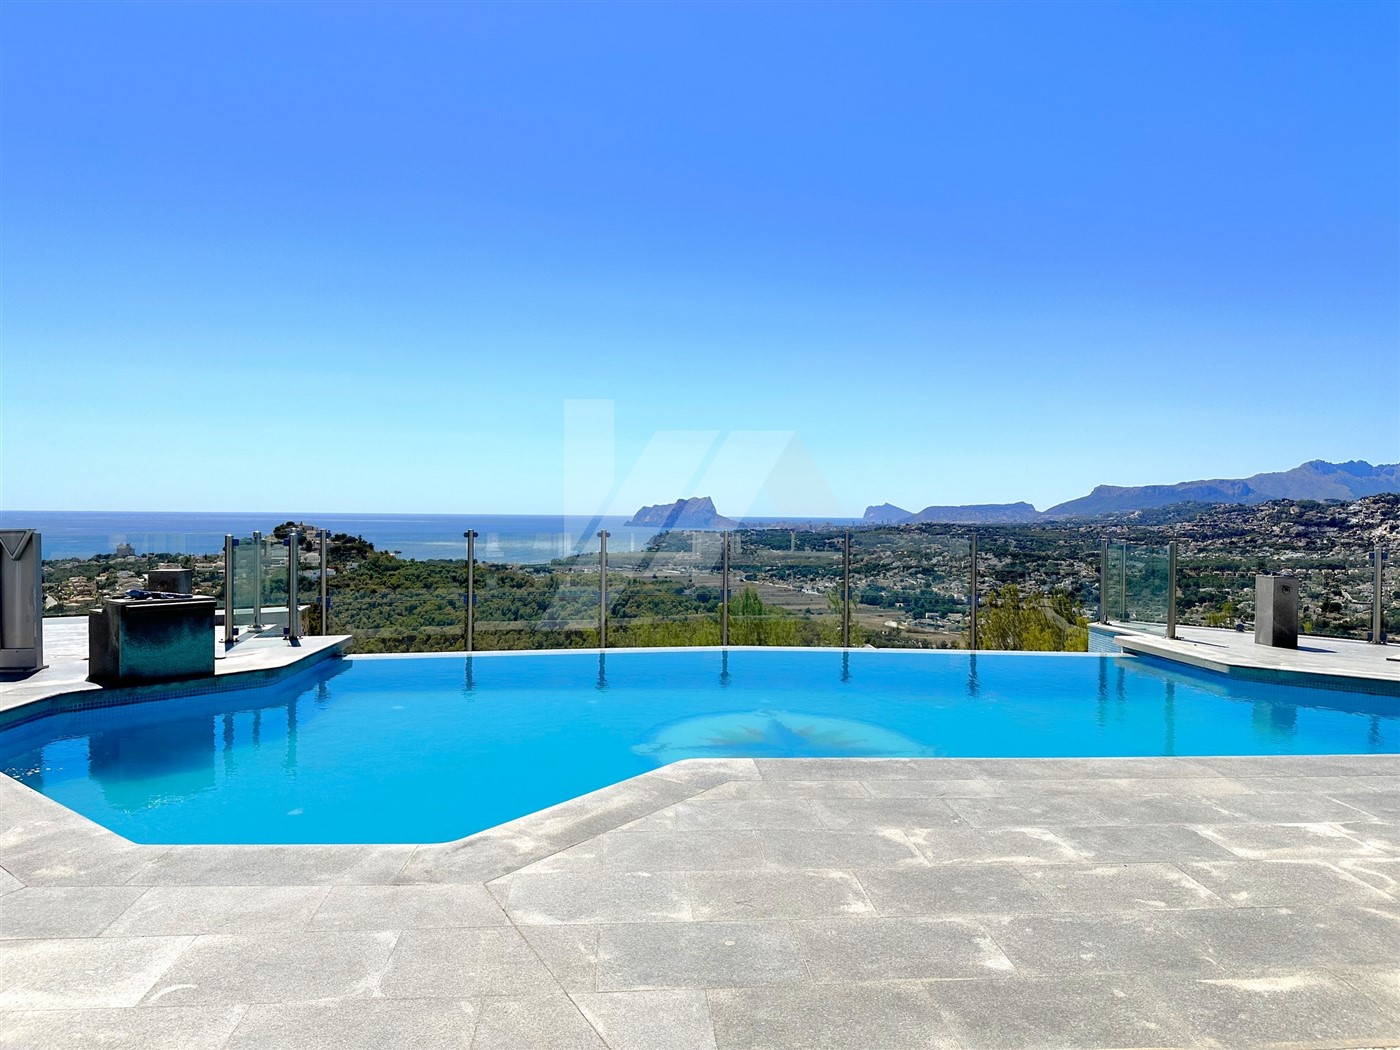 Villa mit Panoramablick auf das Meer zum Verkauf in Moraira, Costa Blanca.